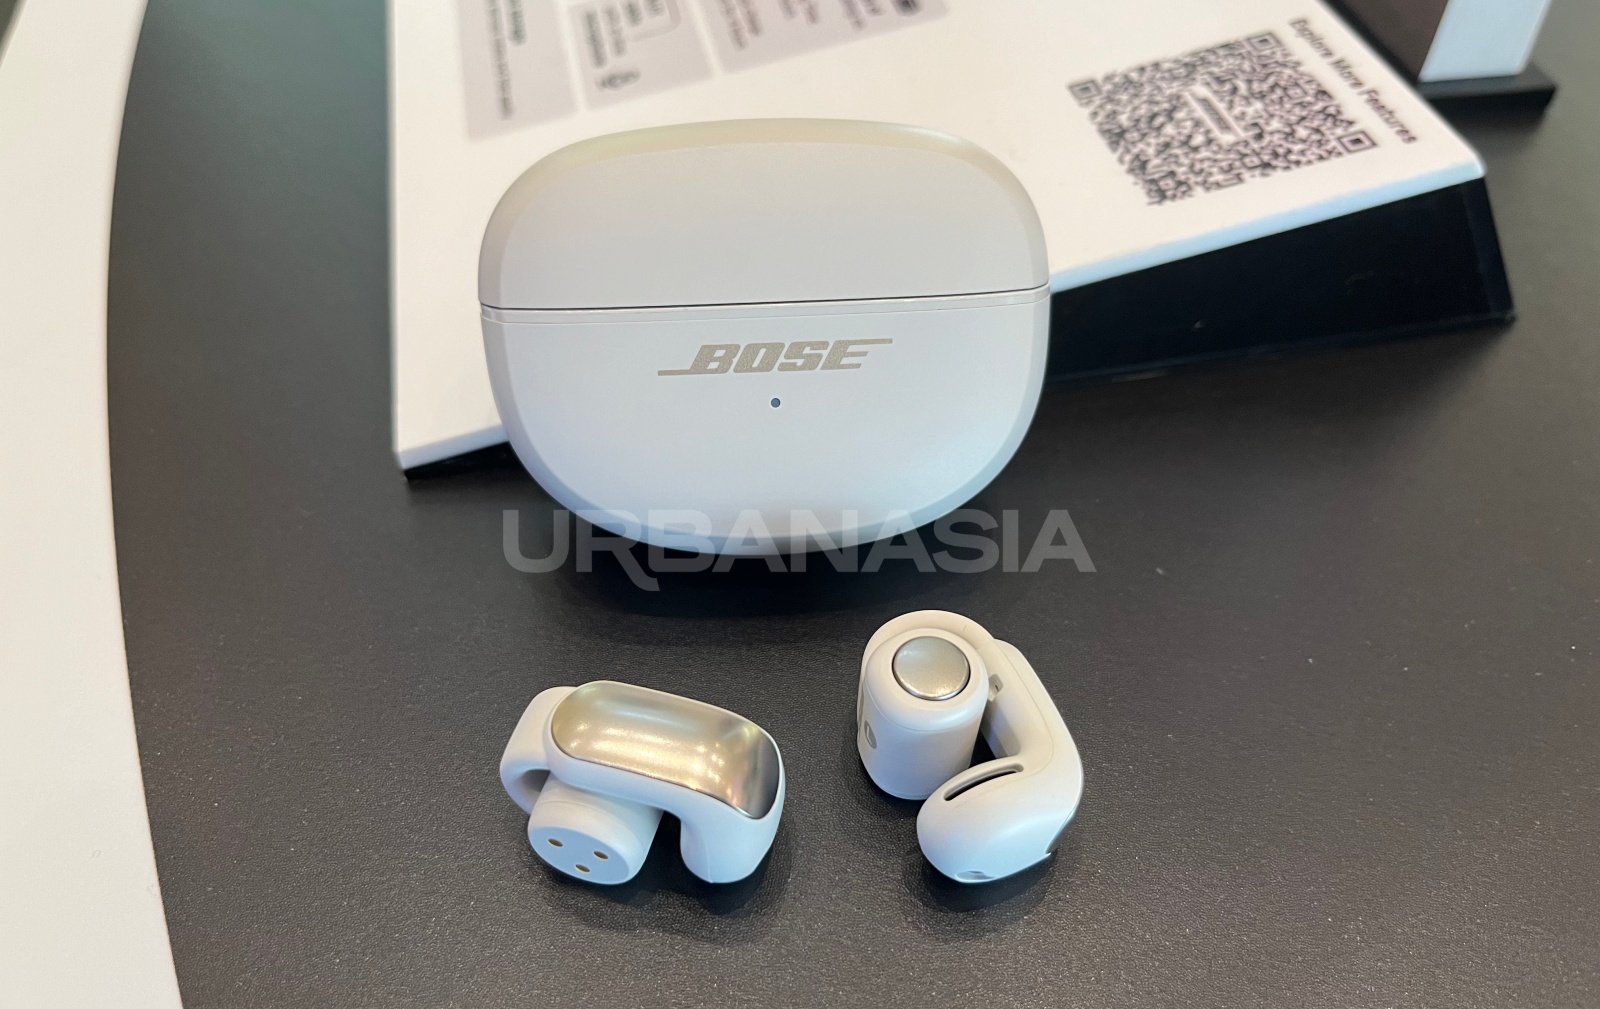 Spesifikasi dan Harga Bose Ultra Open Earbuds di Indonesia